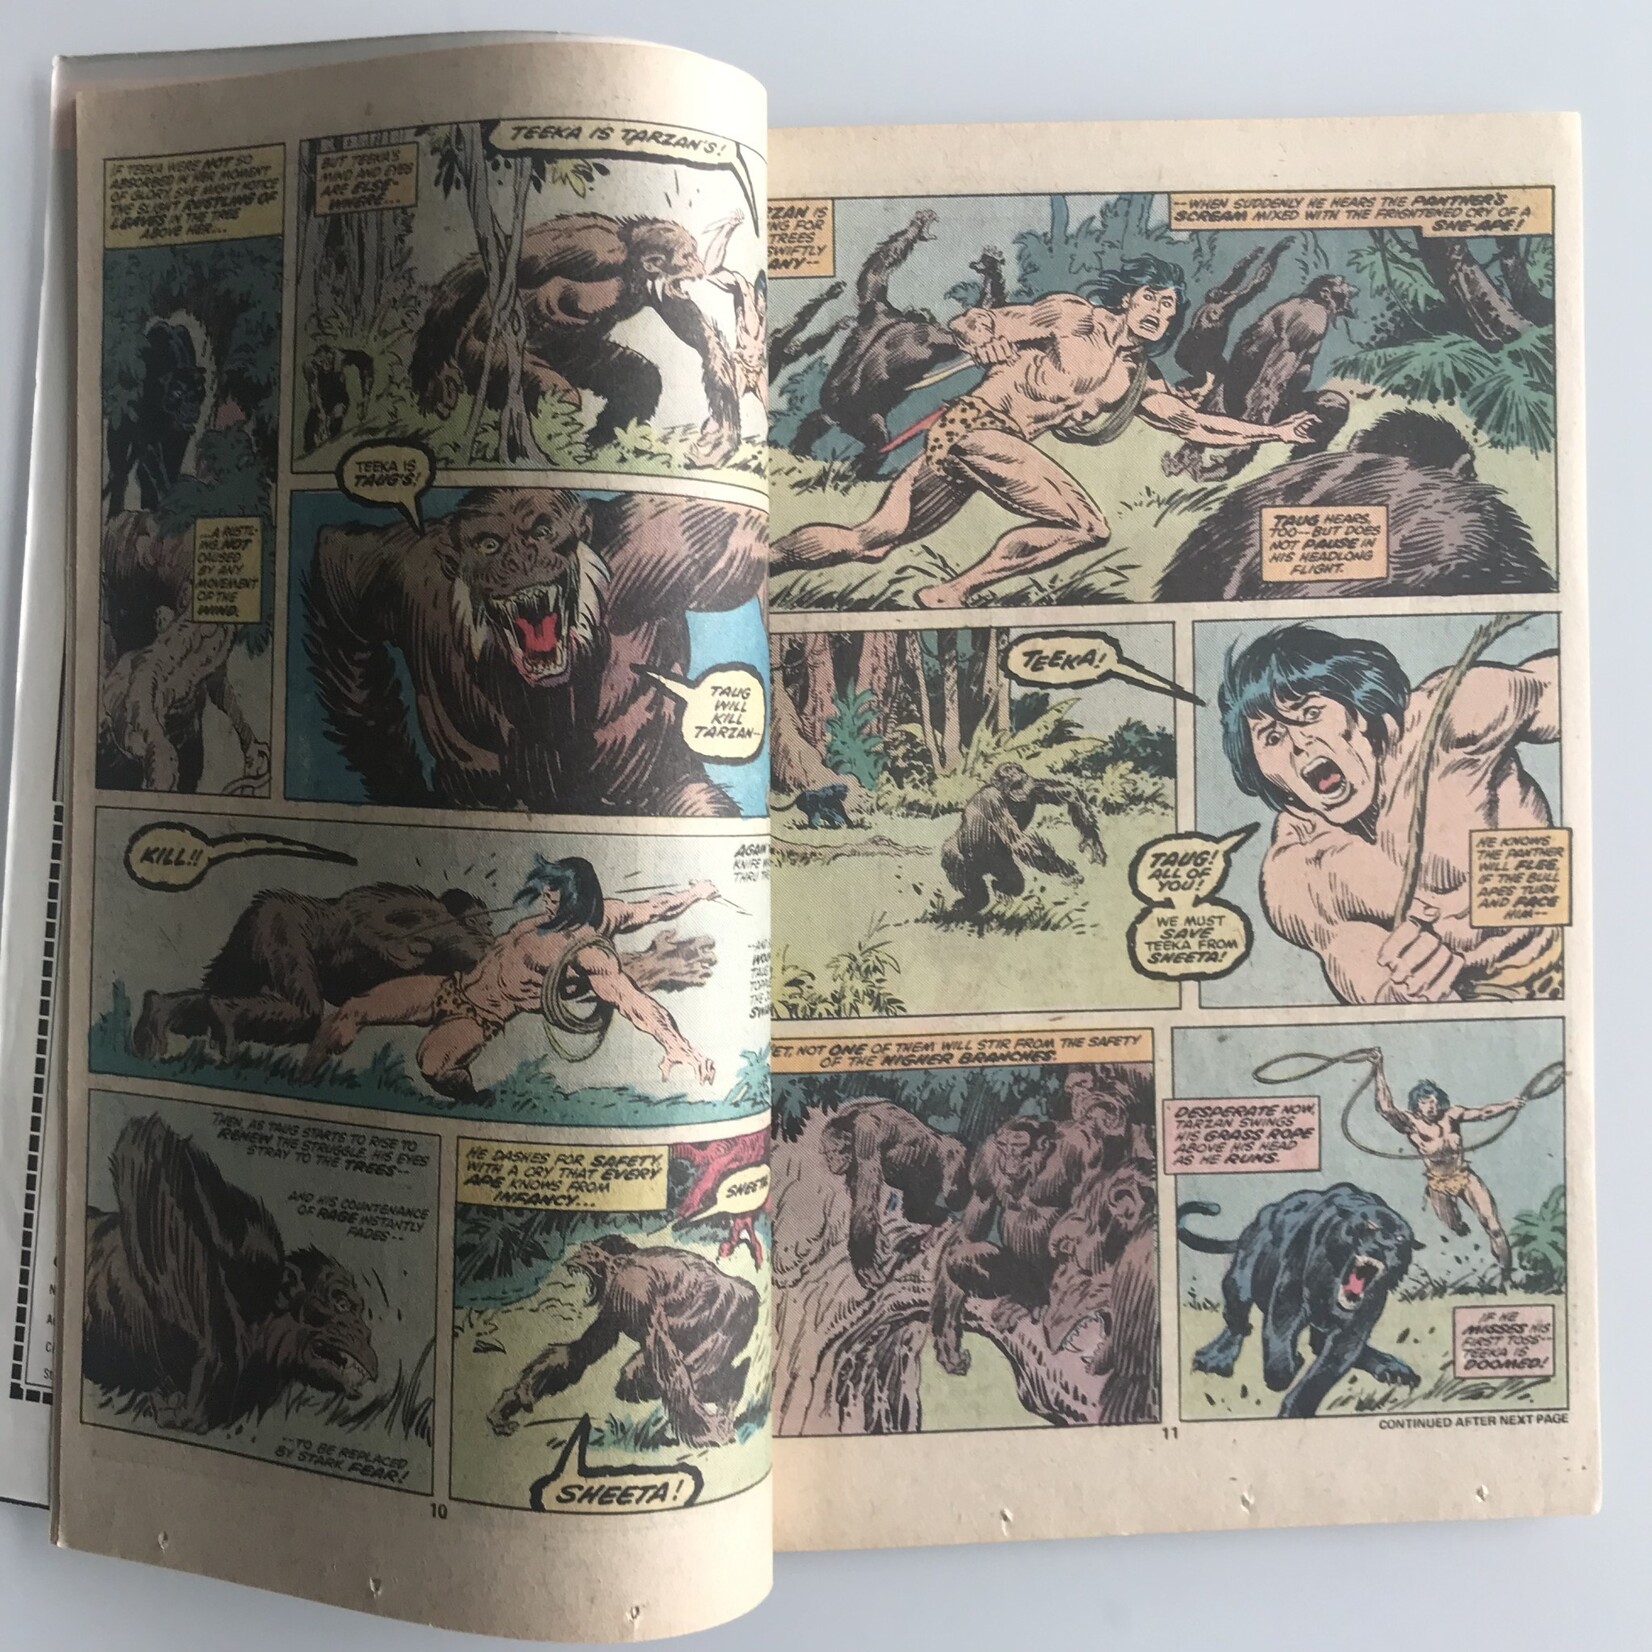 Tarzan Annual - Vol. 1 #1 - Comic Book